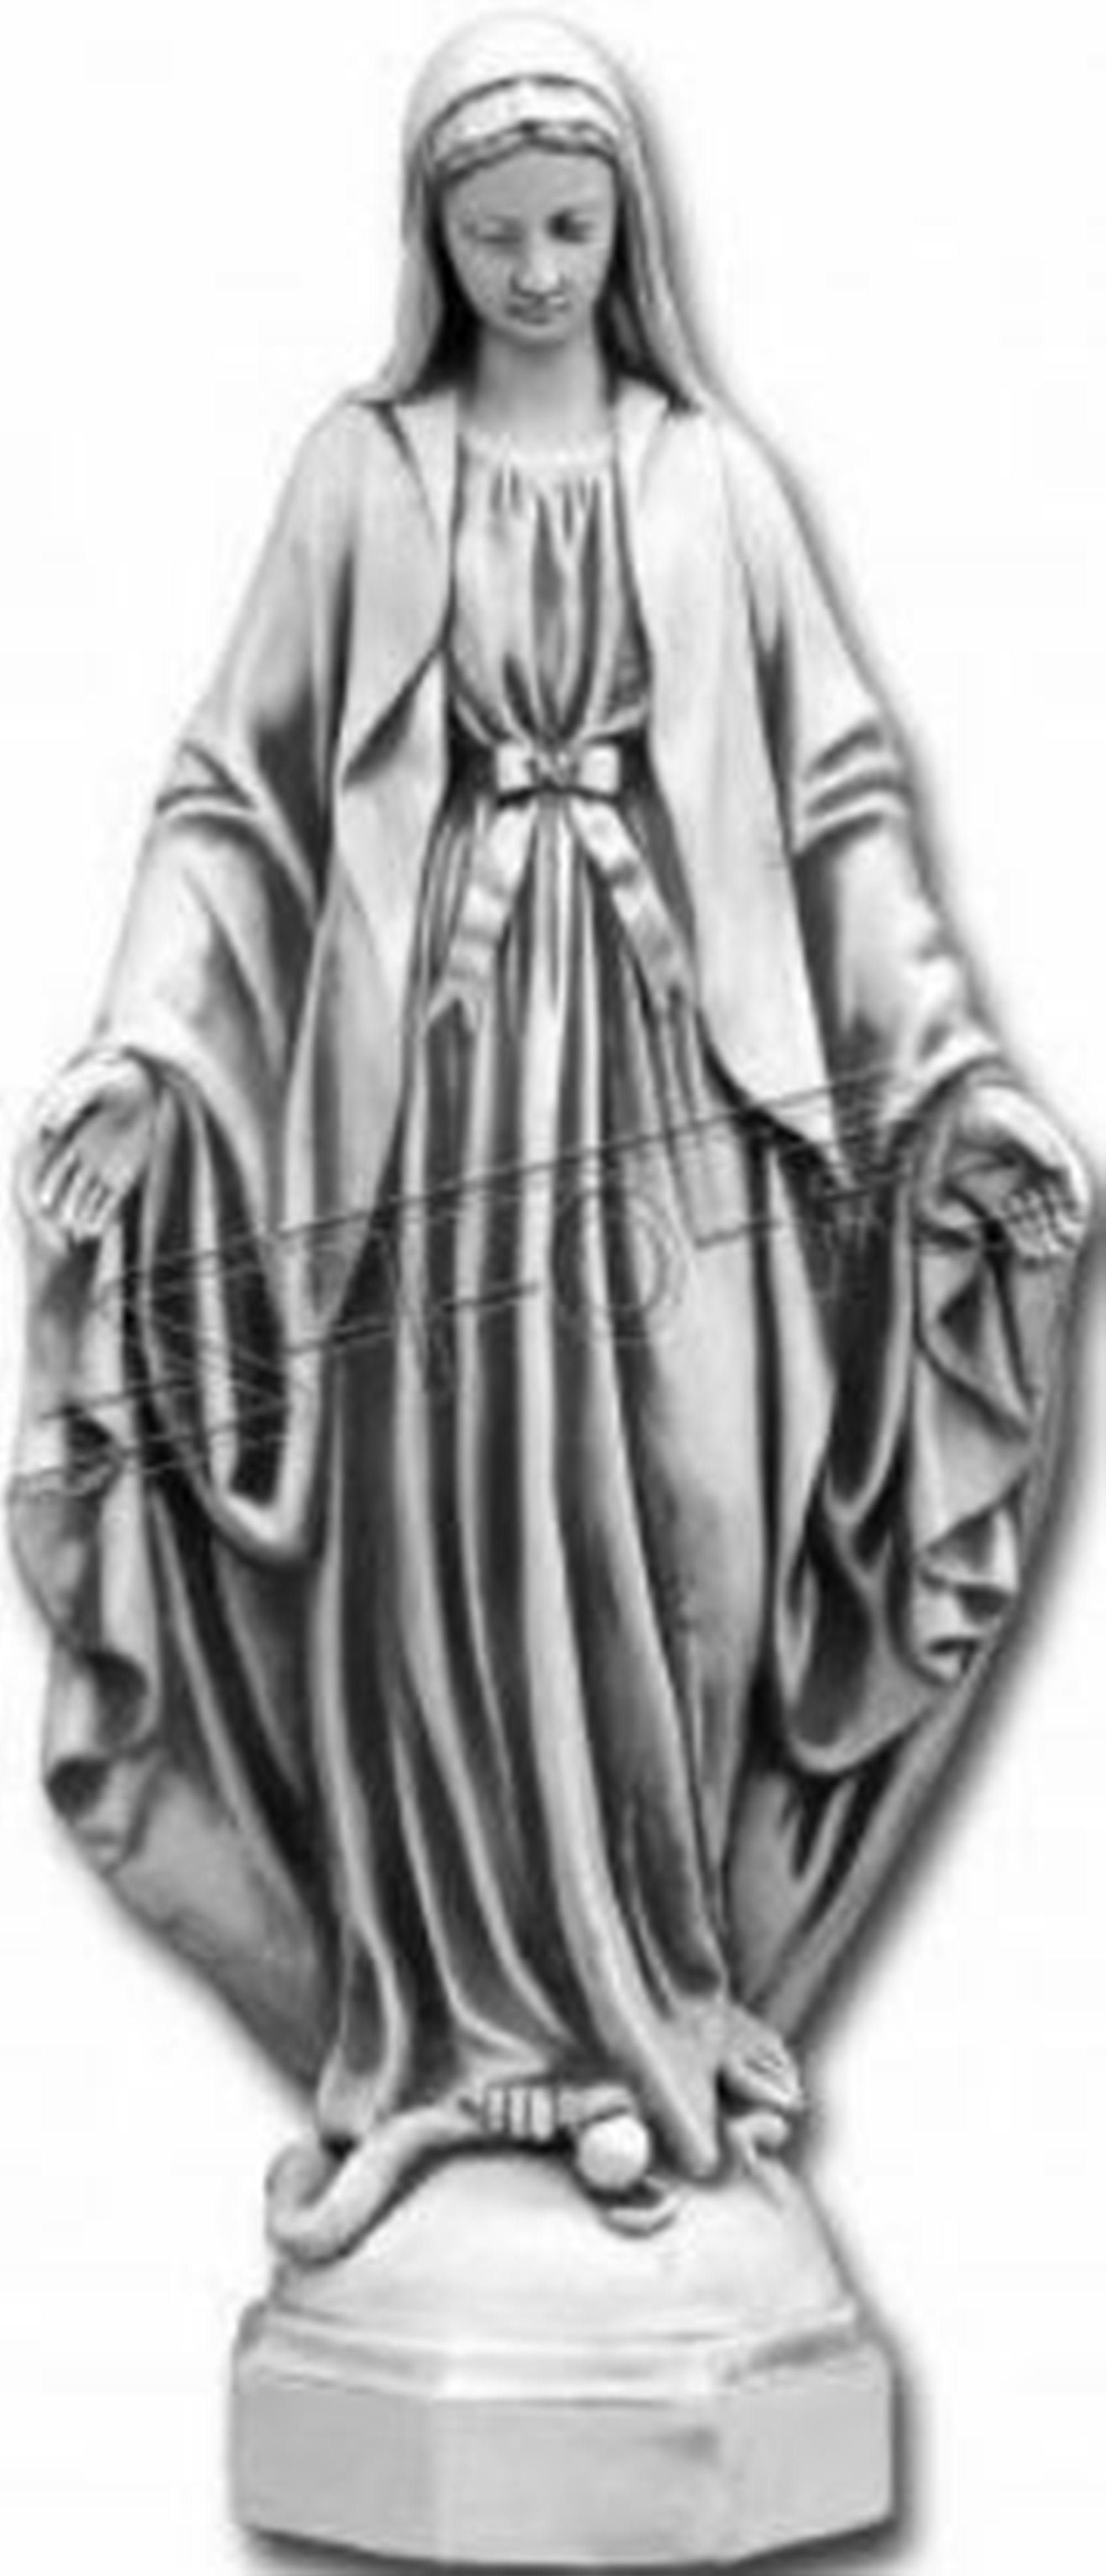 Grab JVmoebel Garten Deko Skulptur Heilige S101189 Maria Statue Mutter 100cm Figur Skulptur Jesus